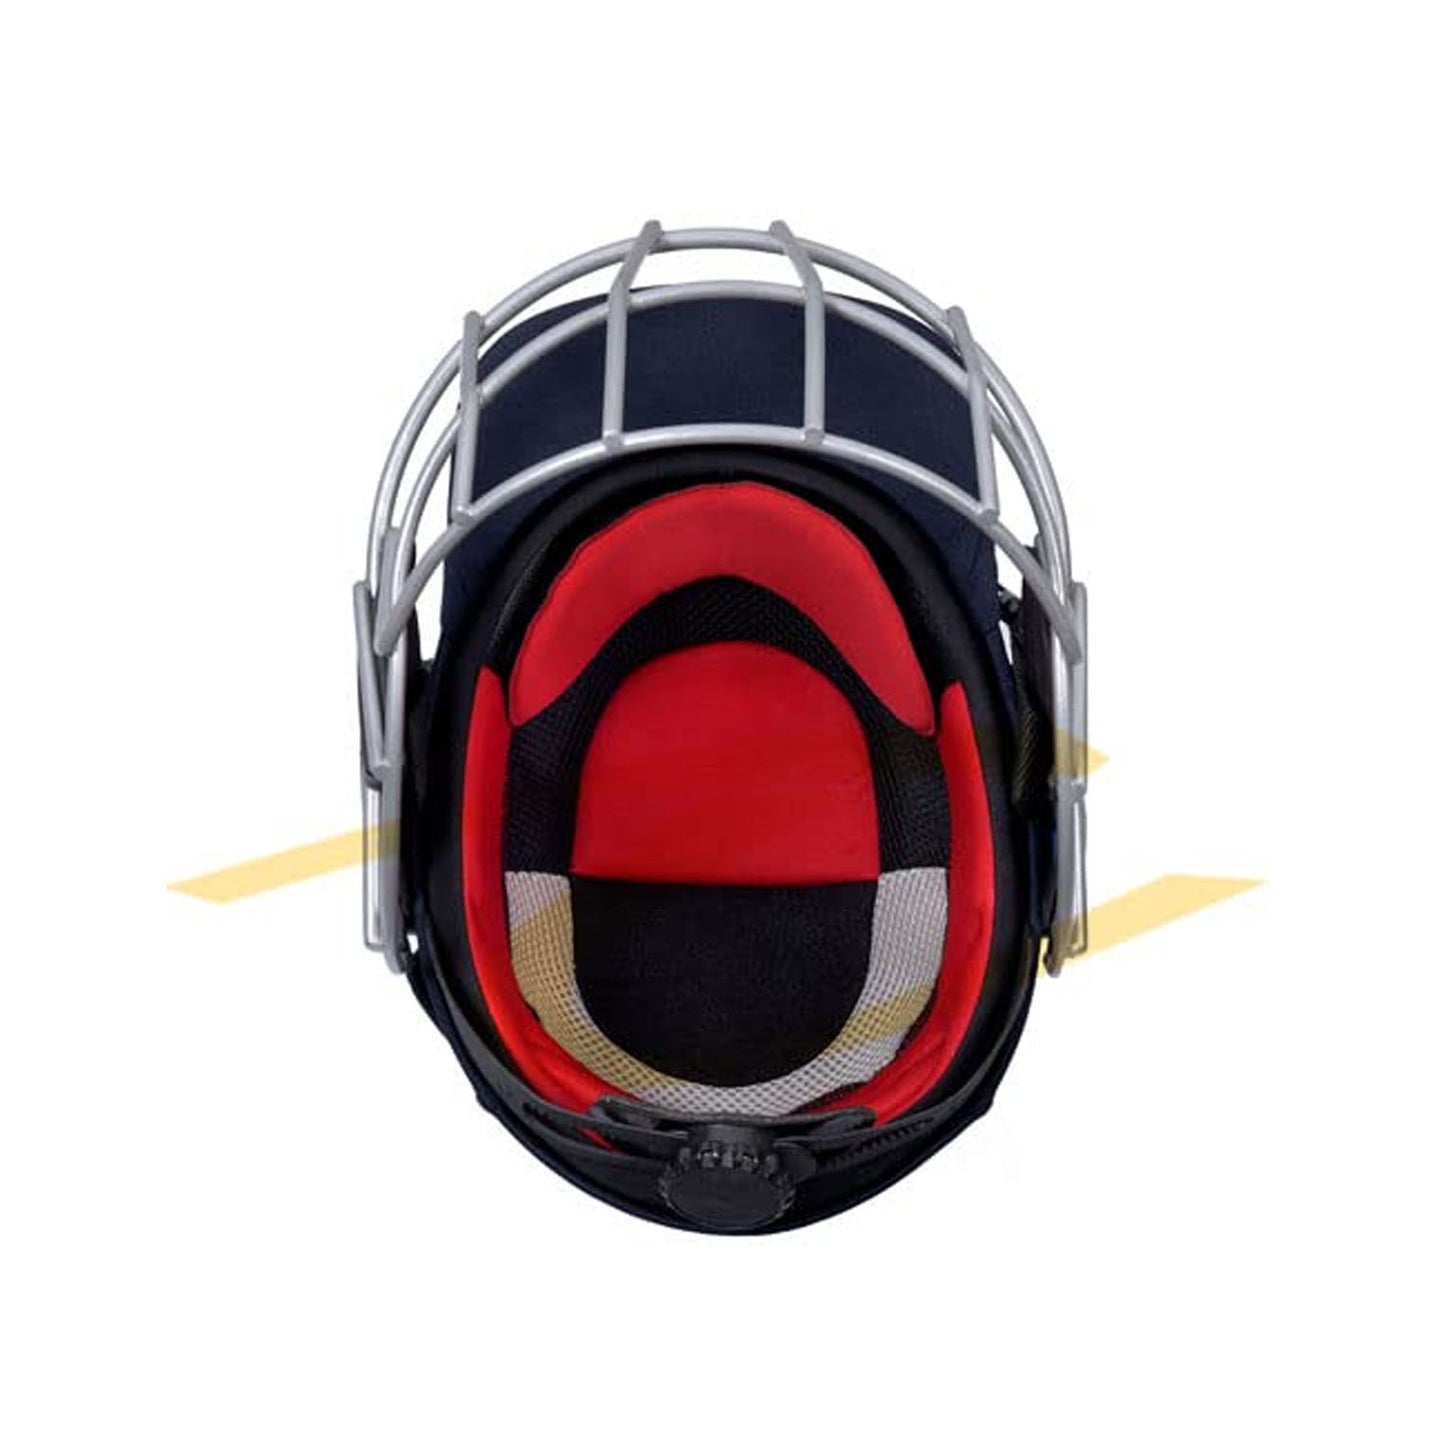 Forma RP17 Pro Axis MST Steel Cricket Helmet, Red - Best Price online Prokicksports.com